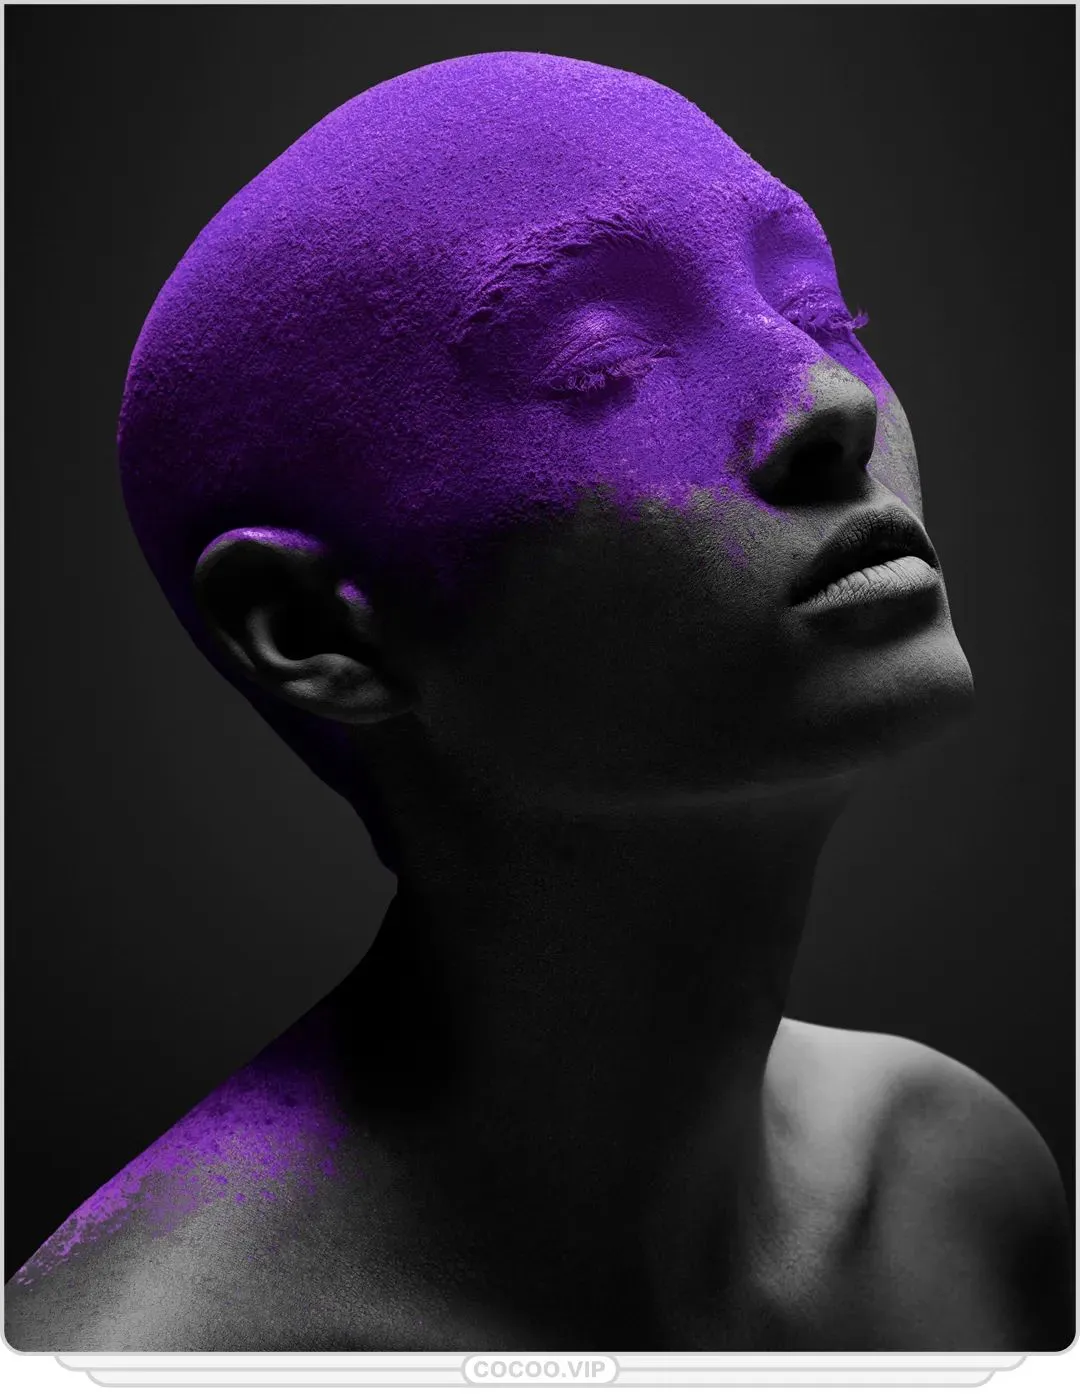 紫色代表什么意思 | 带你全面认识紫色说明的象征意义